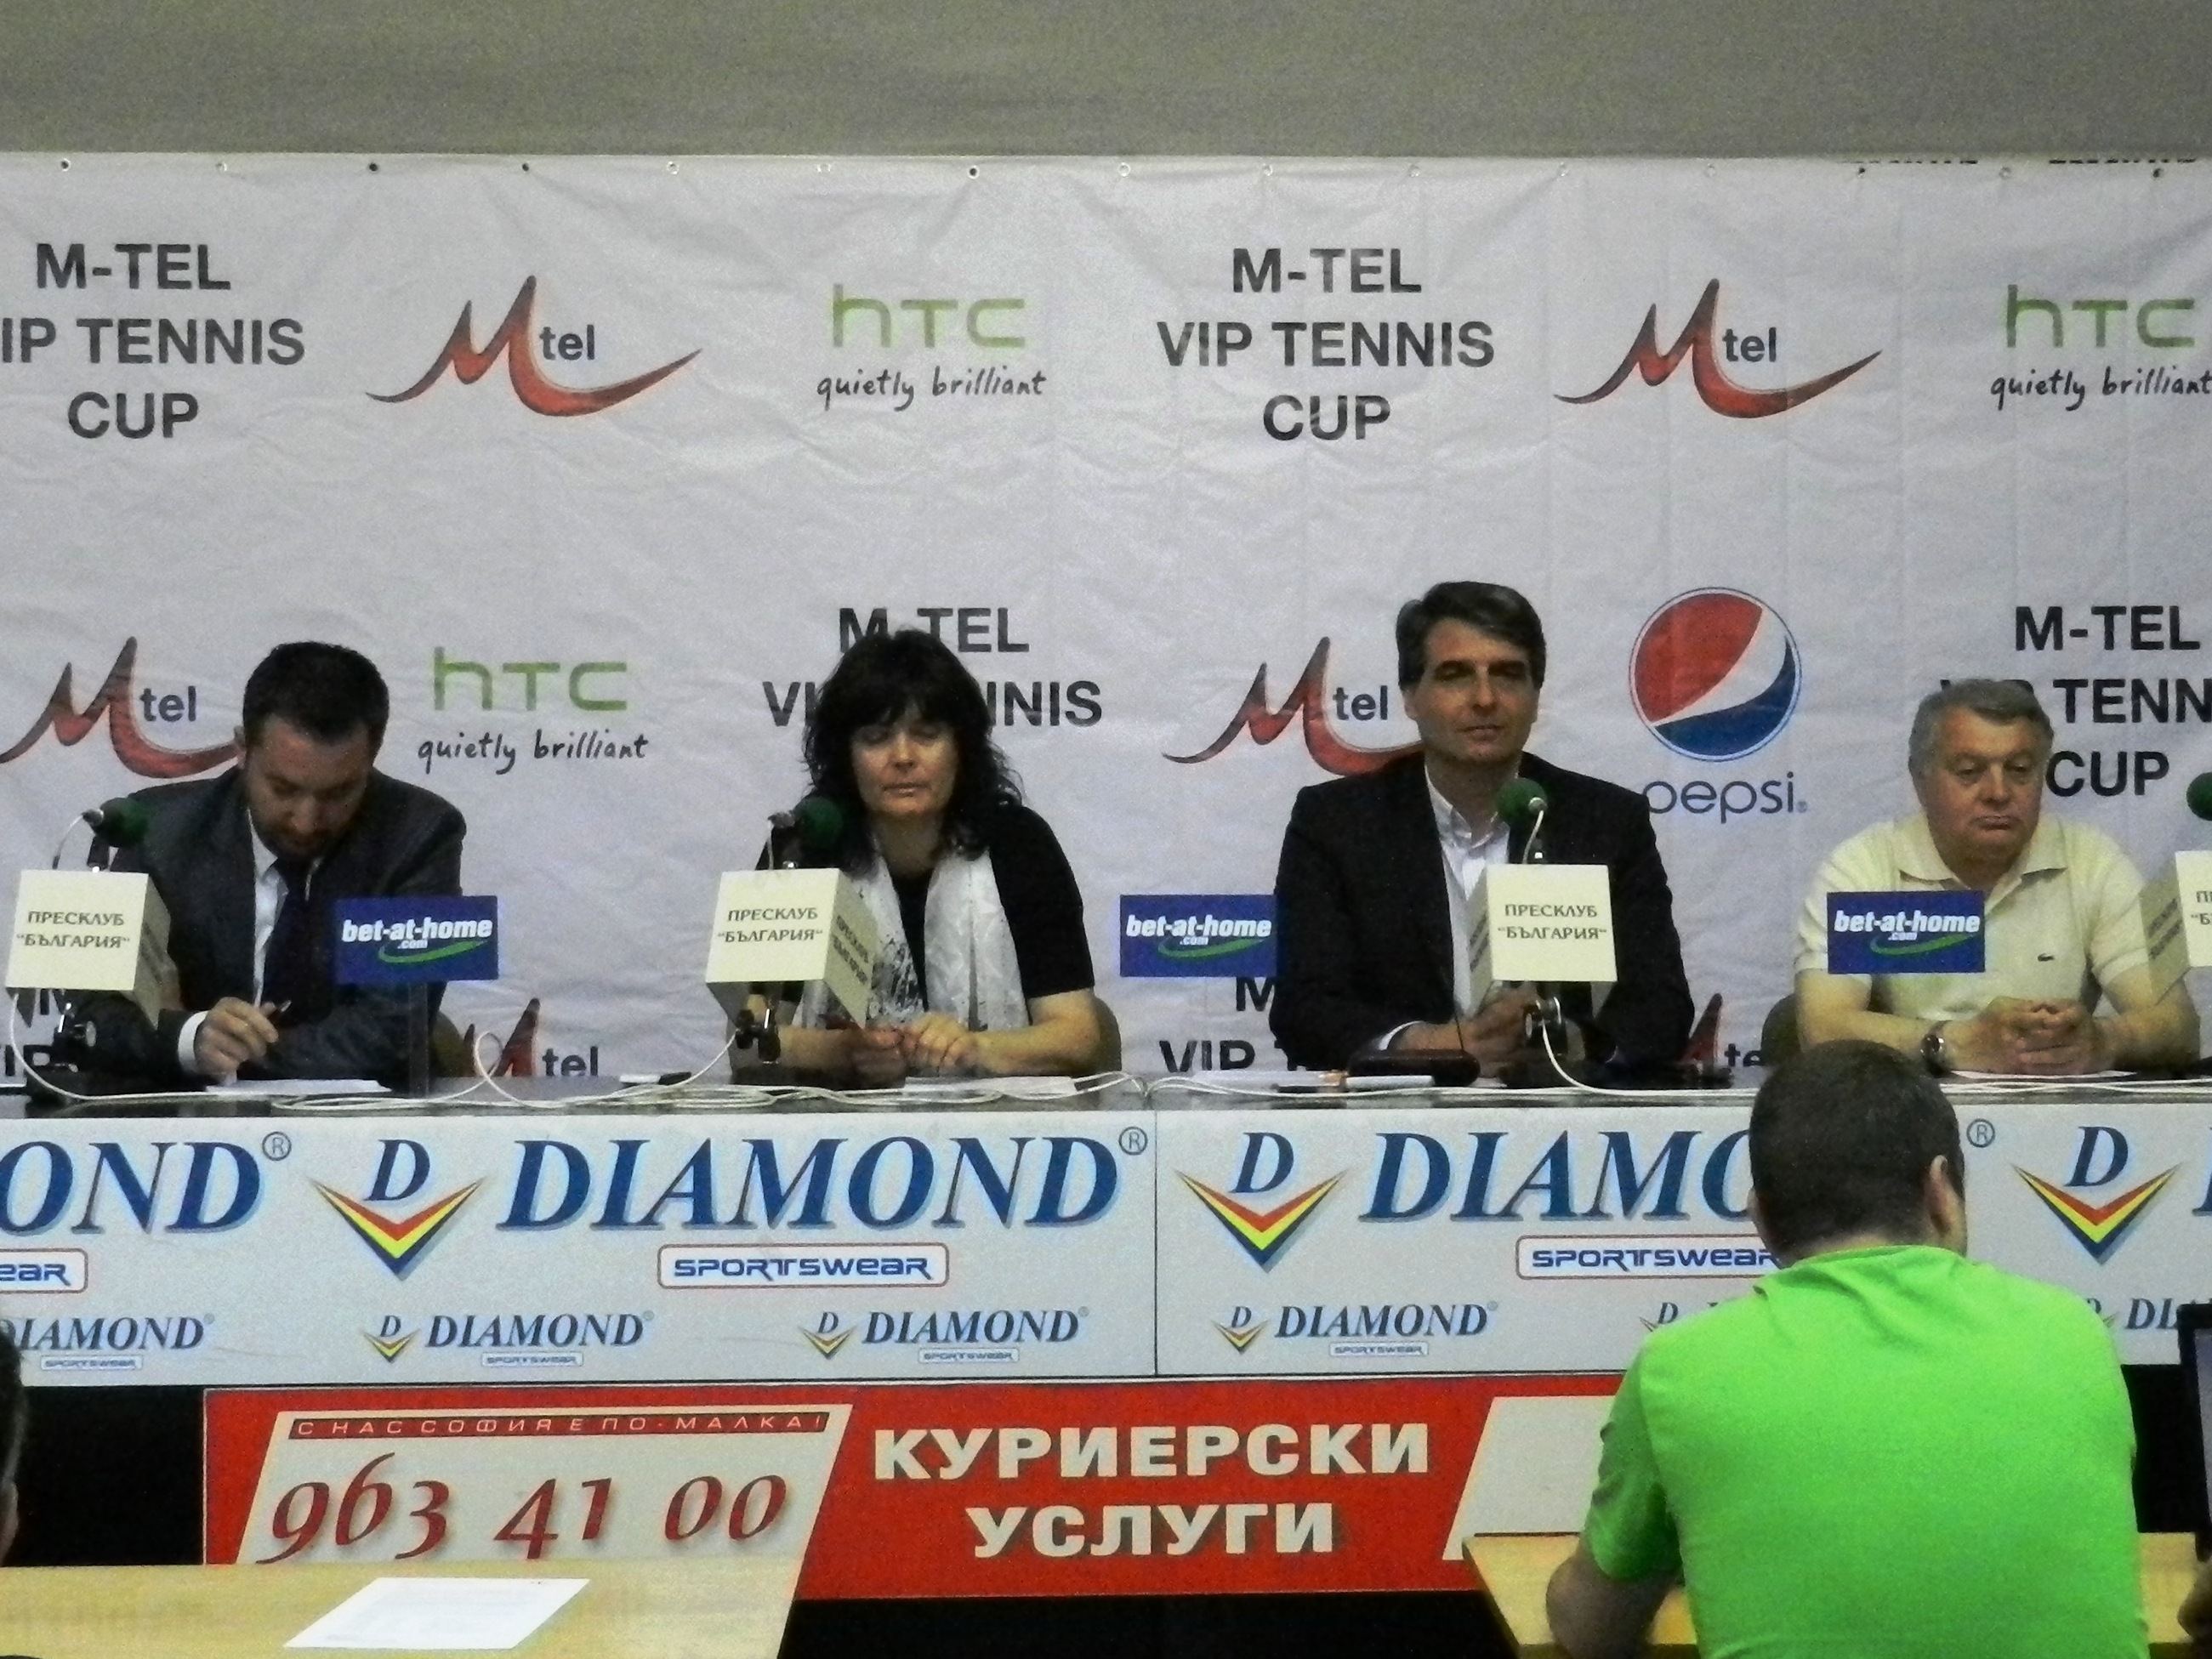 M-Tel VIP Tennis Cup започва от София - вижте програмата